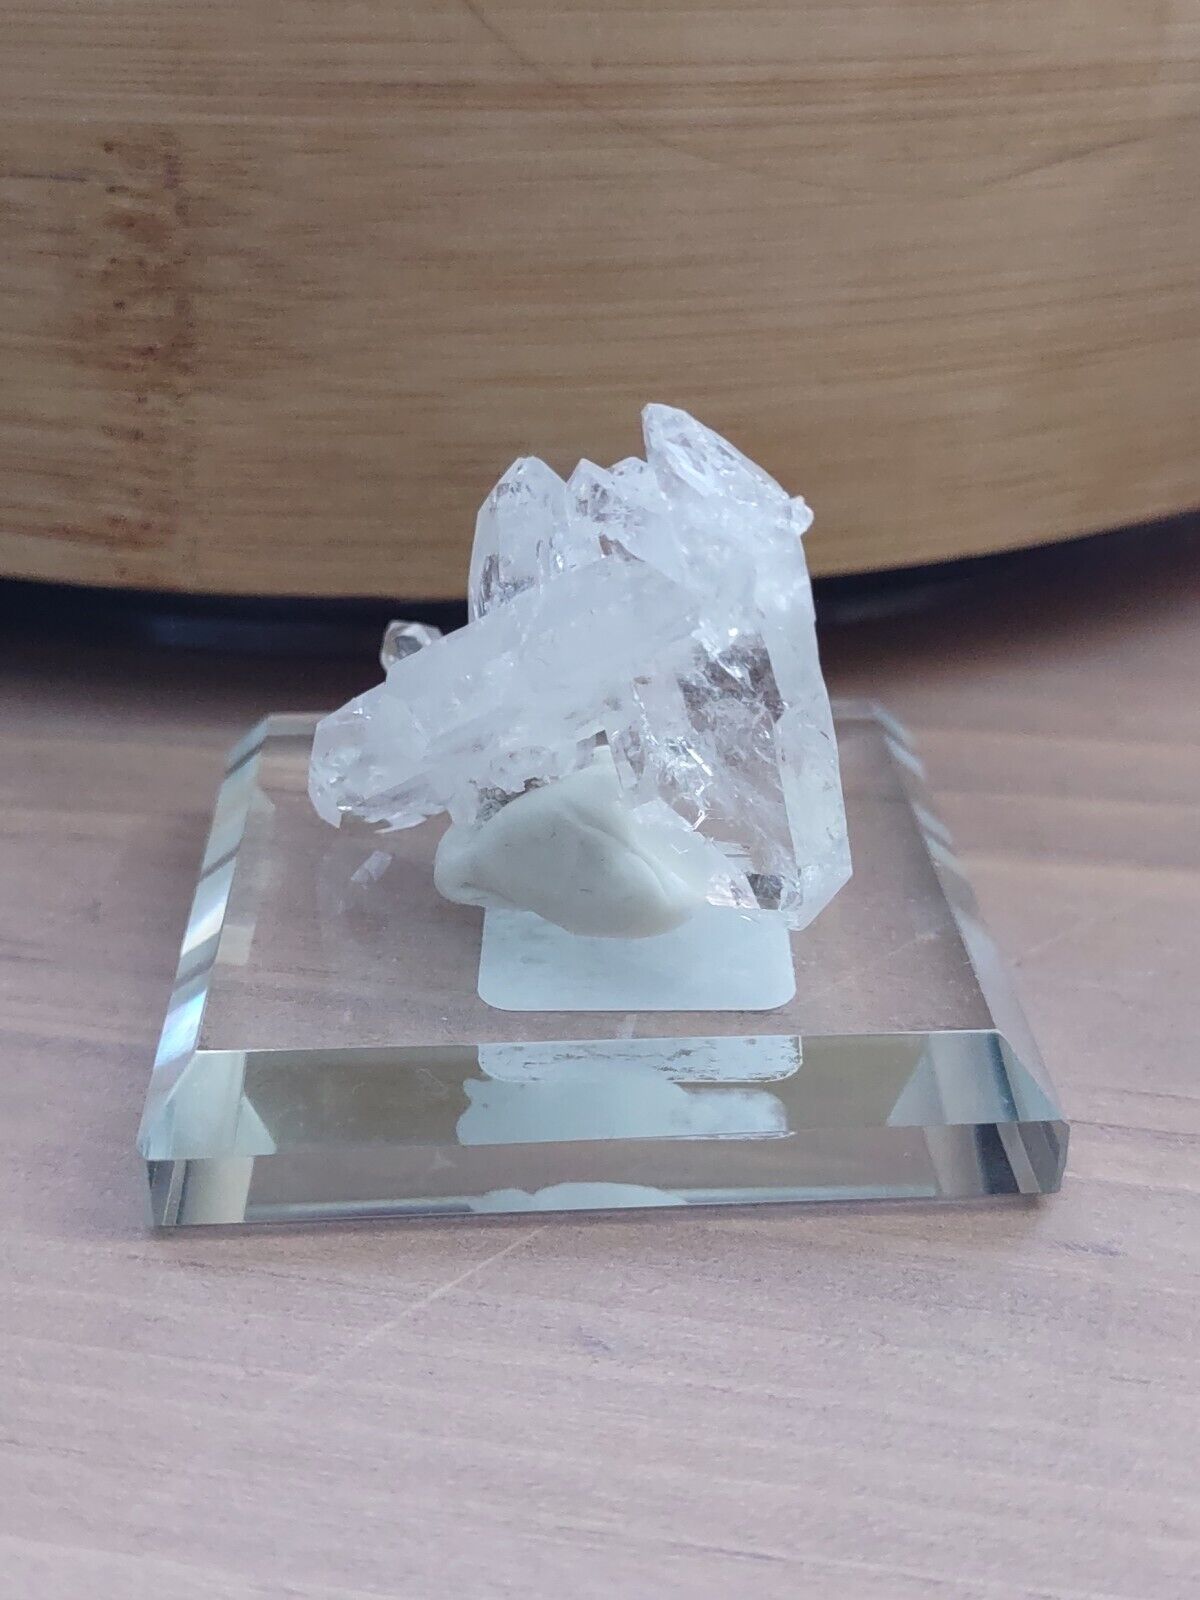 faden quartz crystal